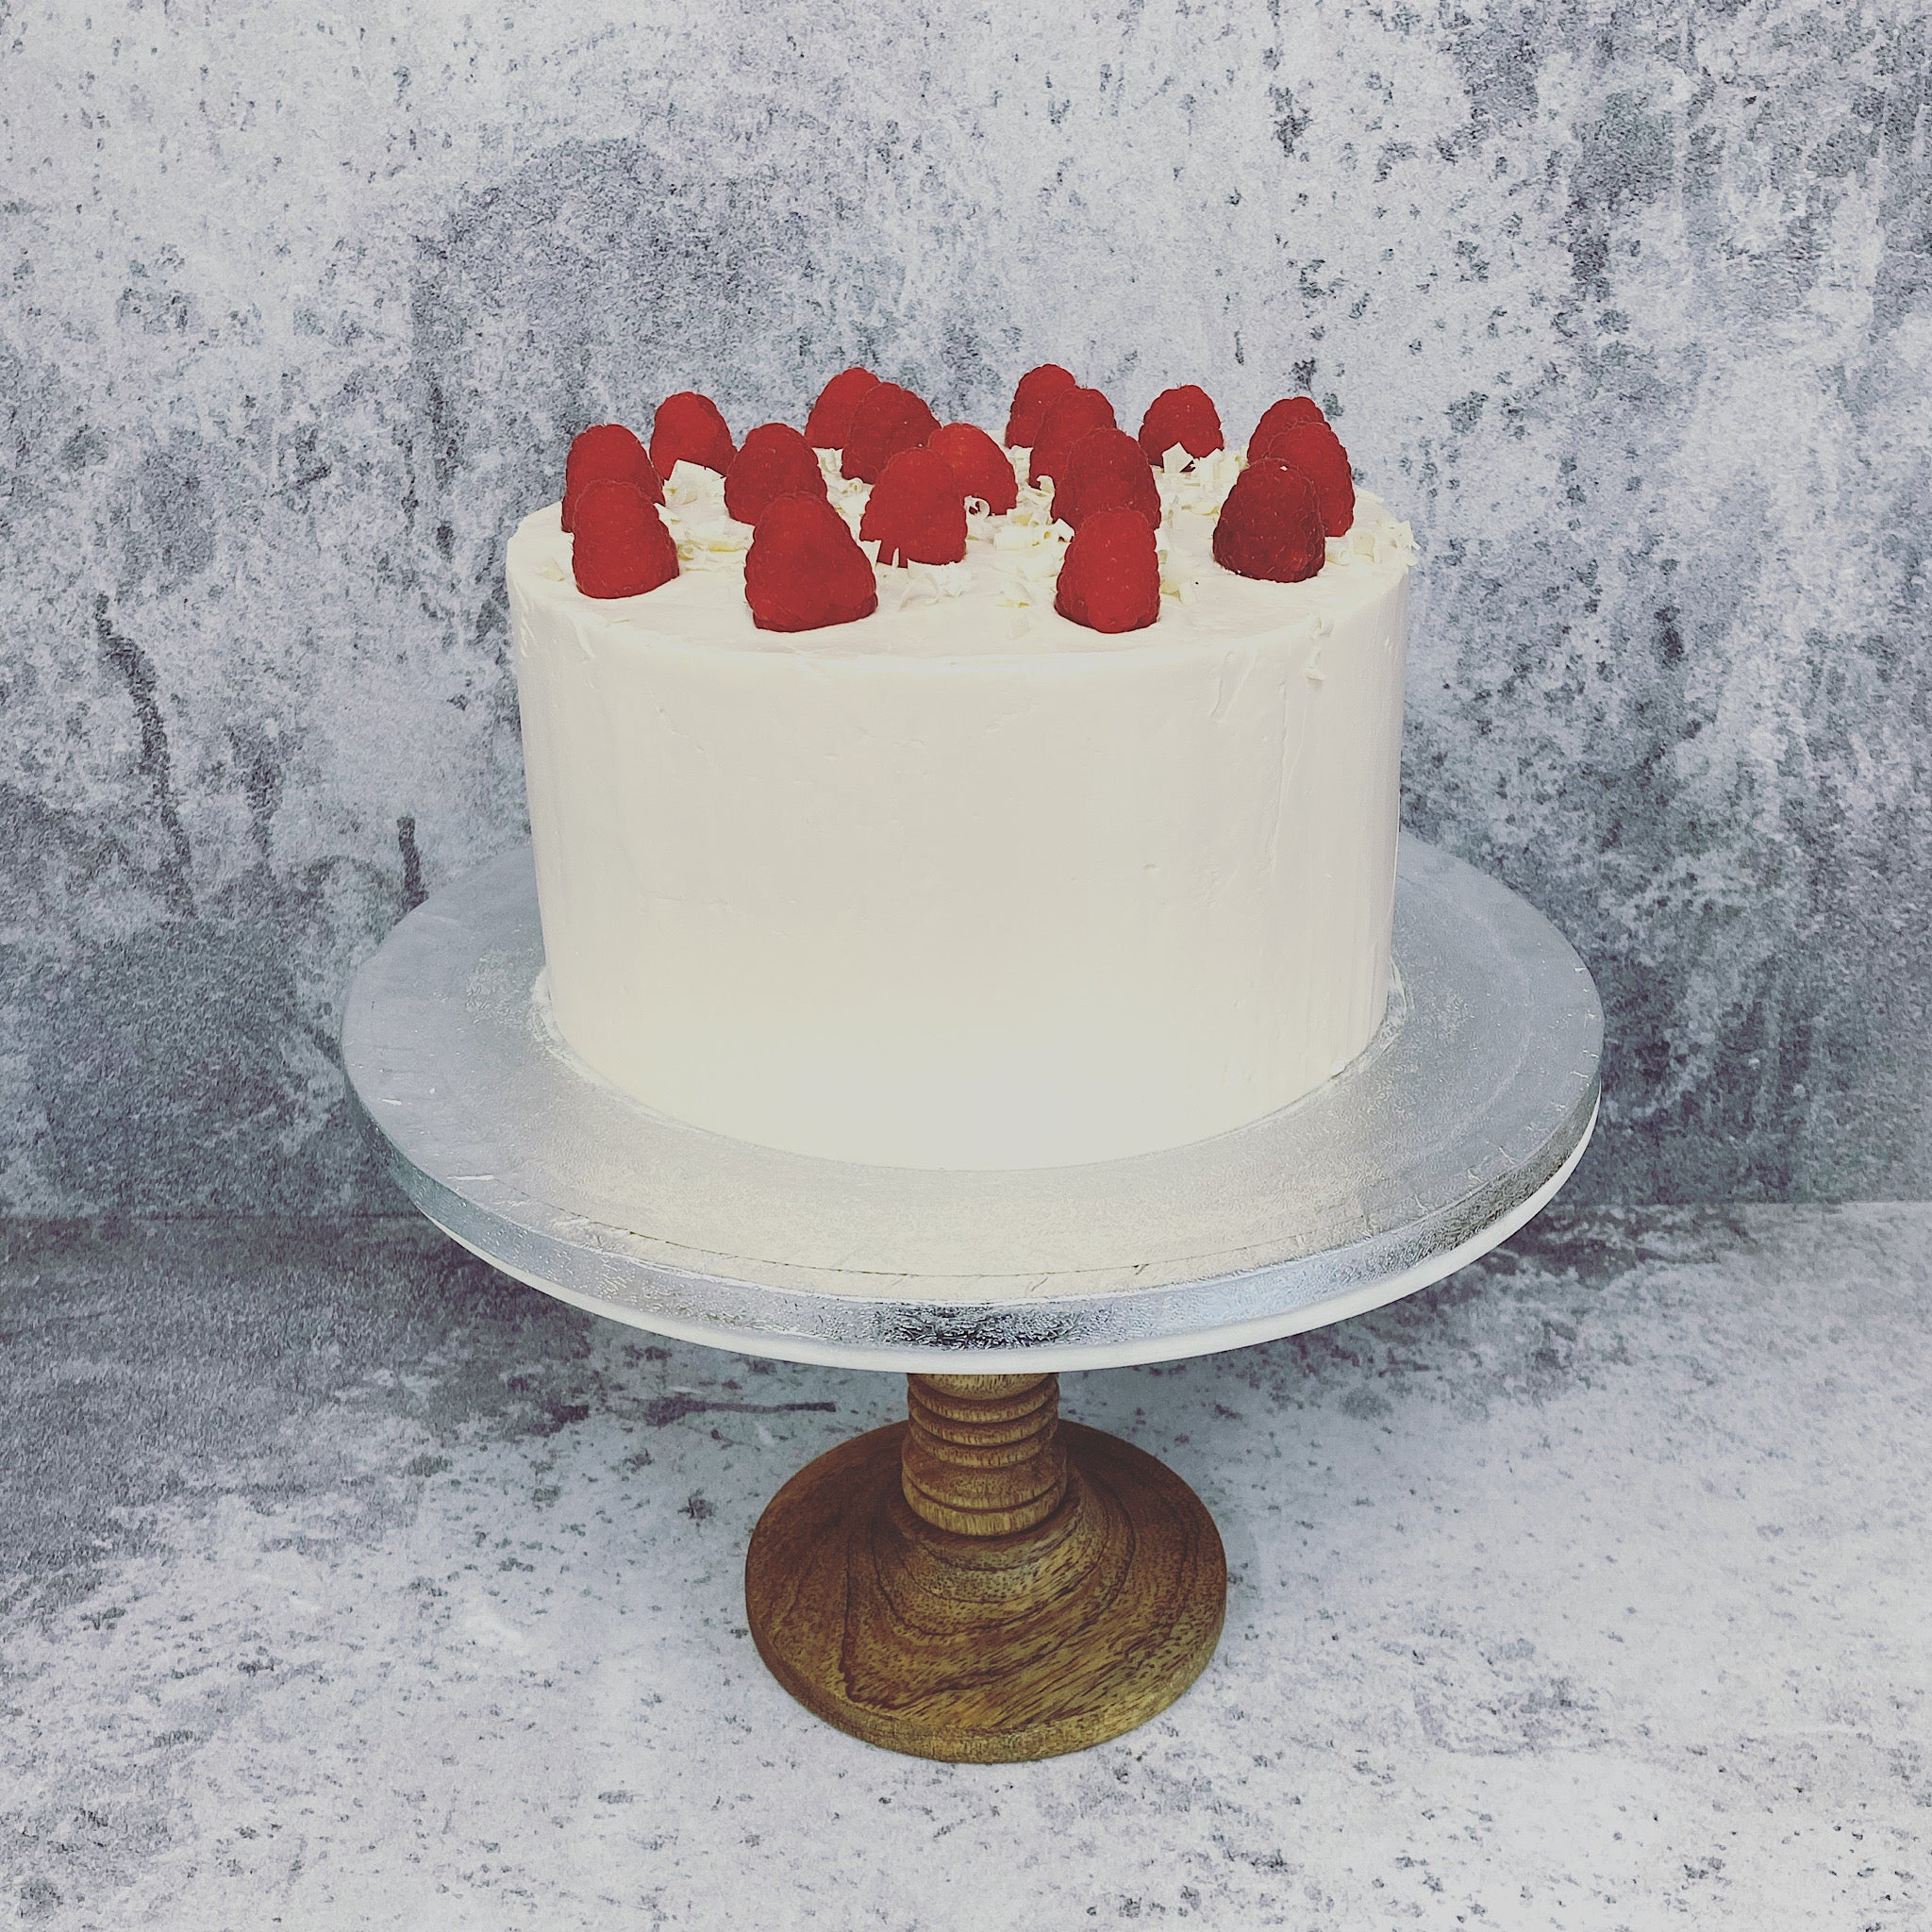 Raspberry & White Chocolate Layer Cake